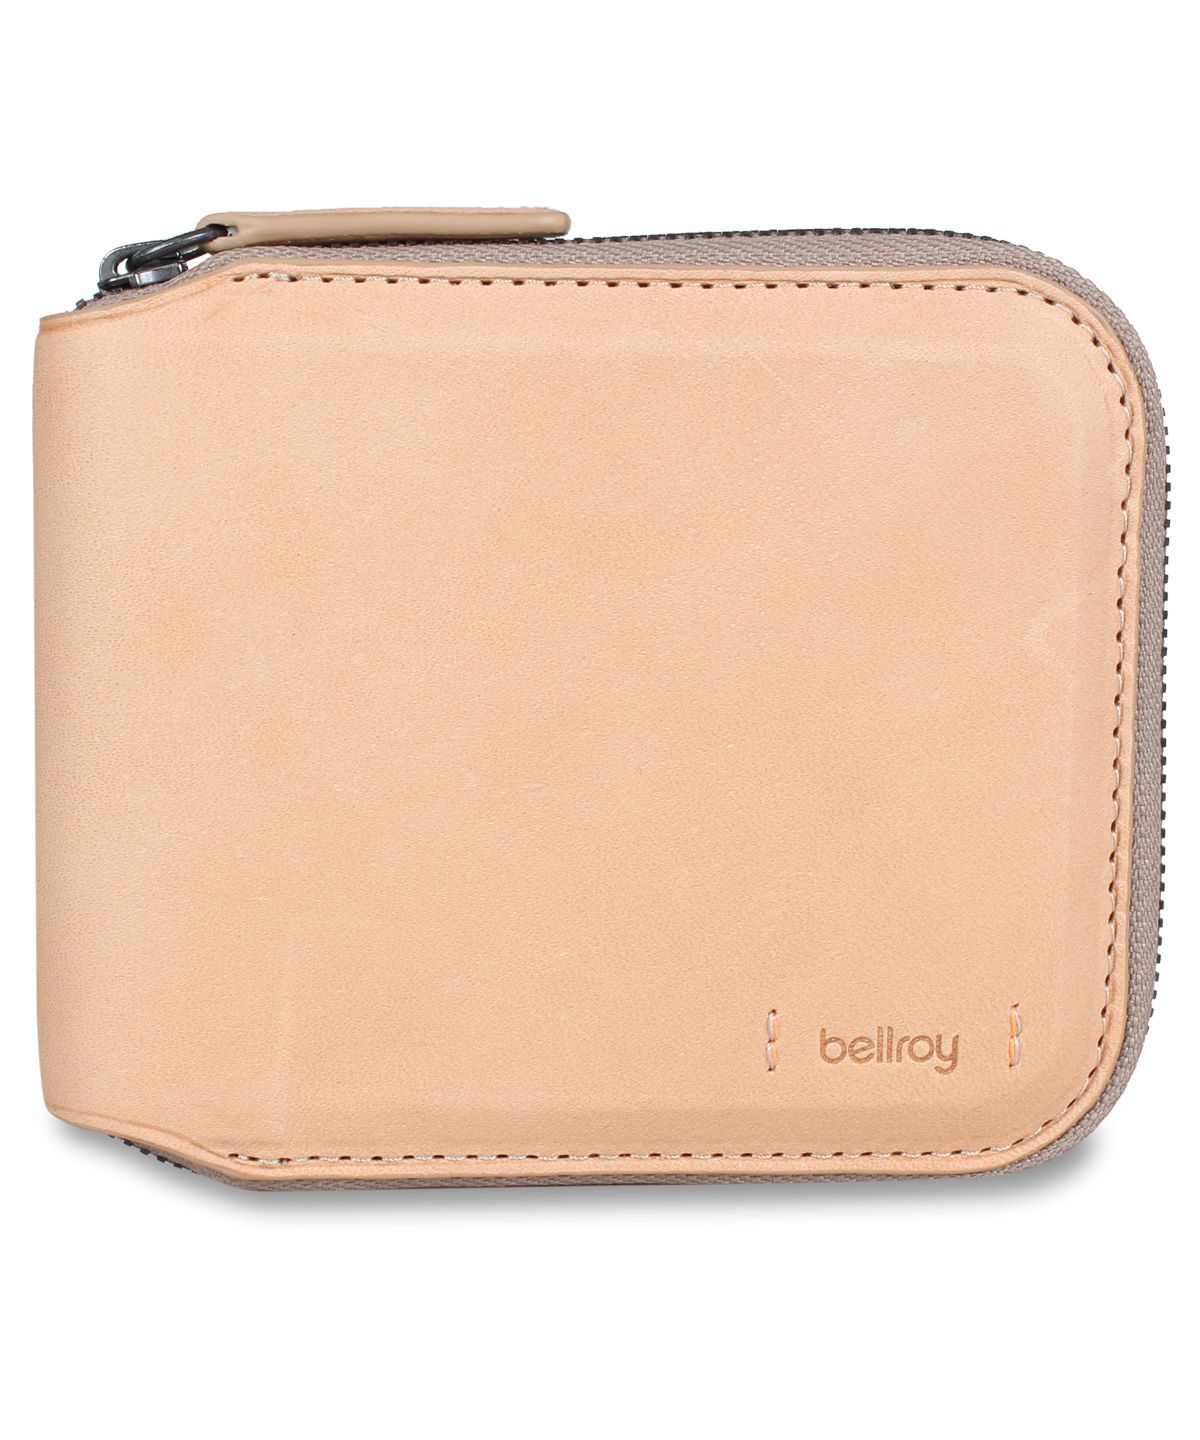 Bellroy ベルロイ 財布 カードケース アークティックブルー 新品 レア